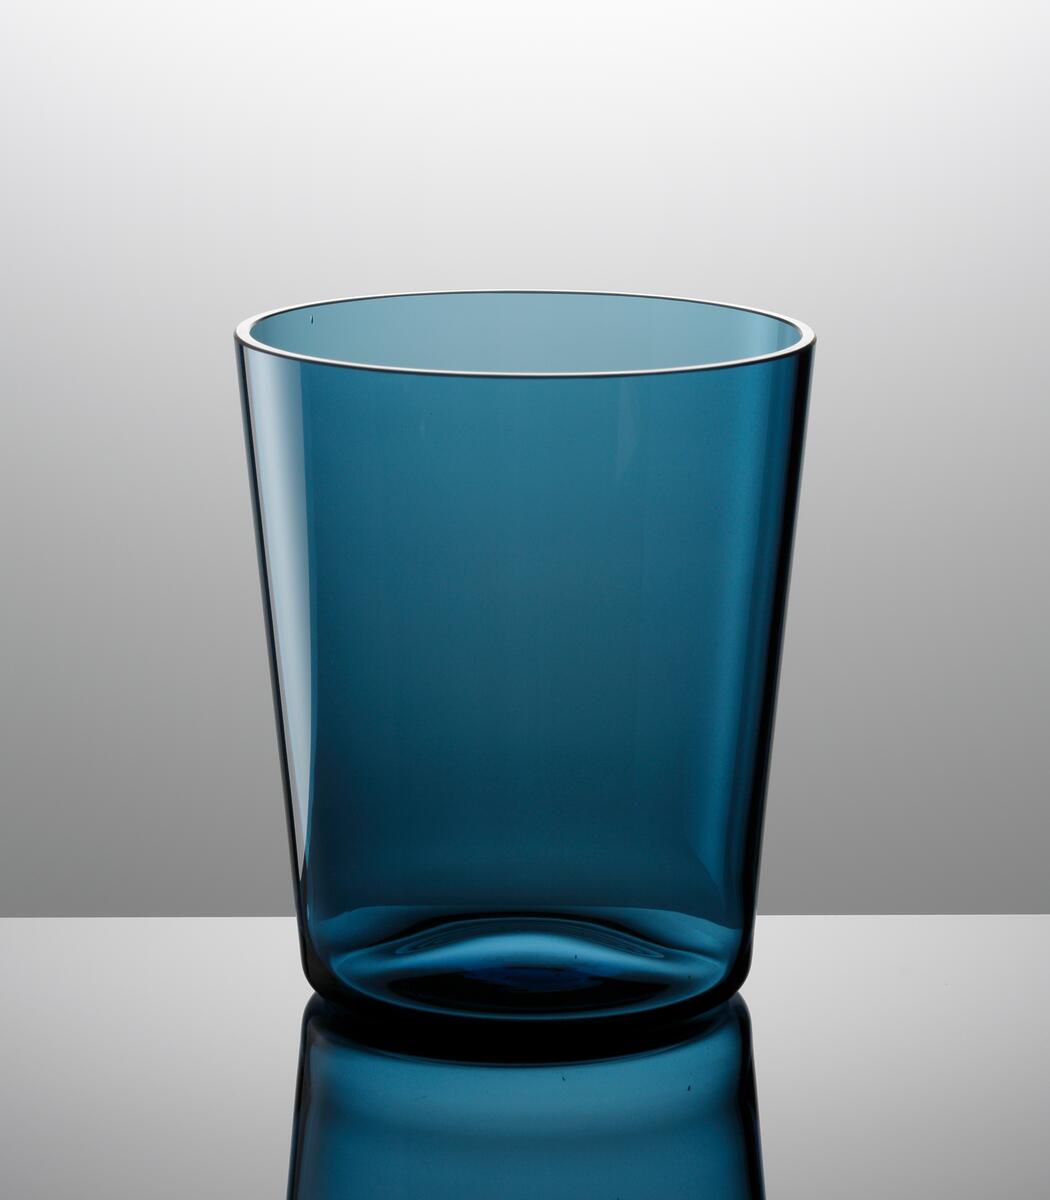 Formgivare: Nils Landberg. Stålblå vas med närmast cylindrisk form.